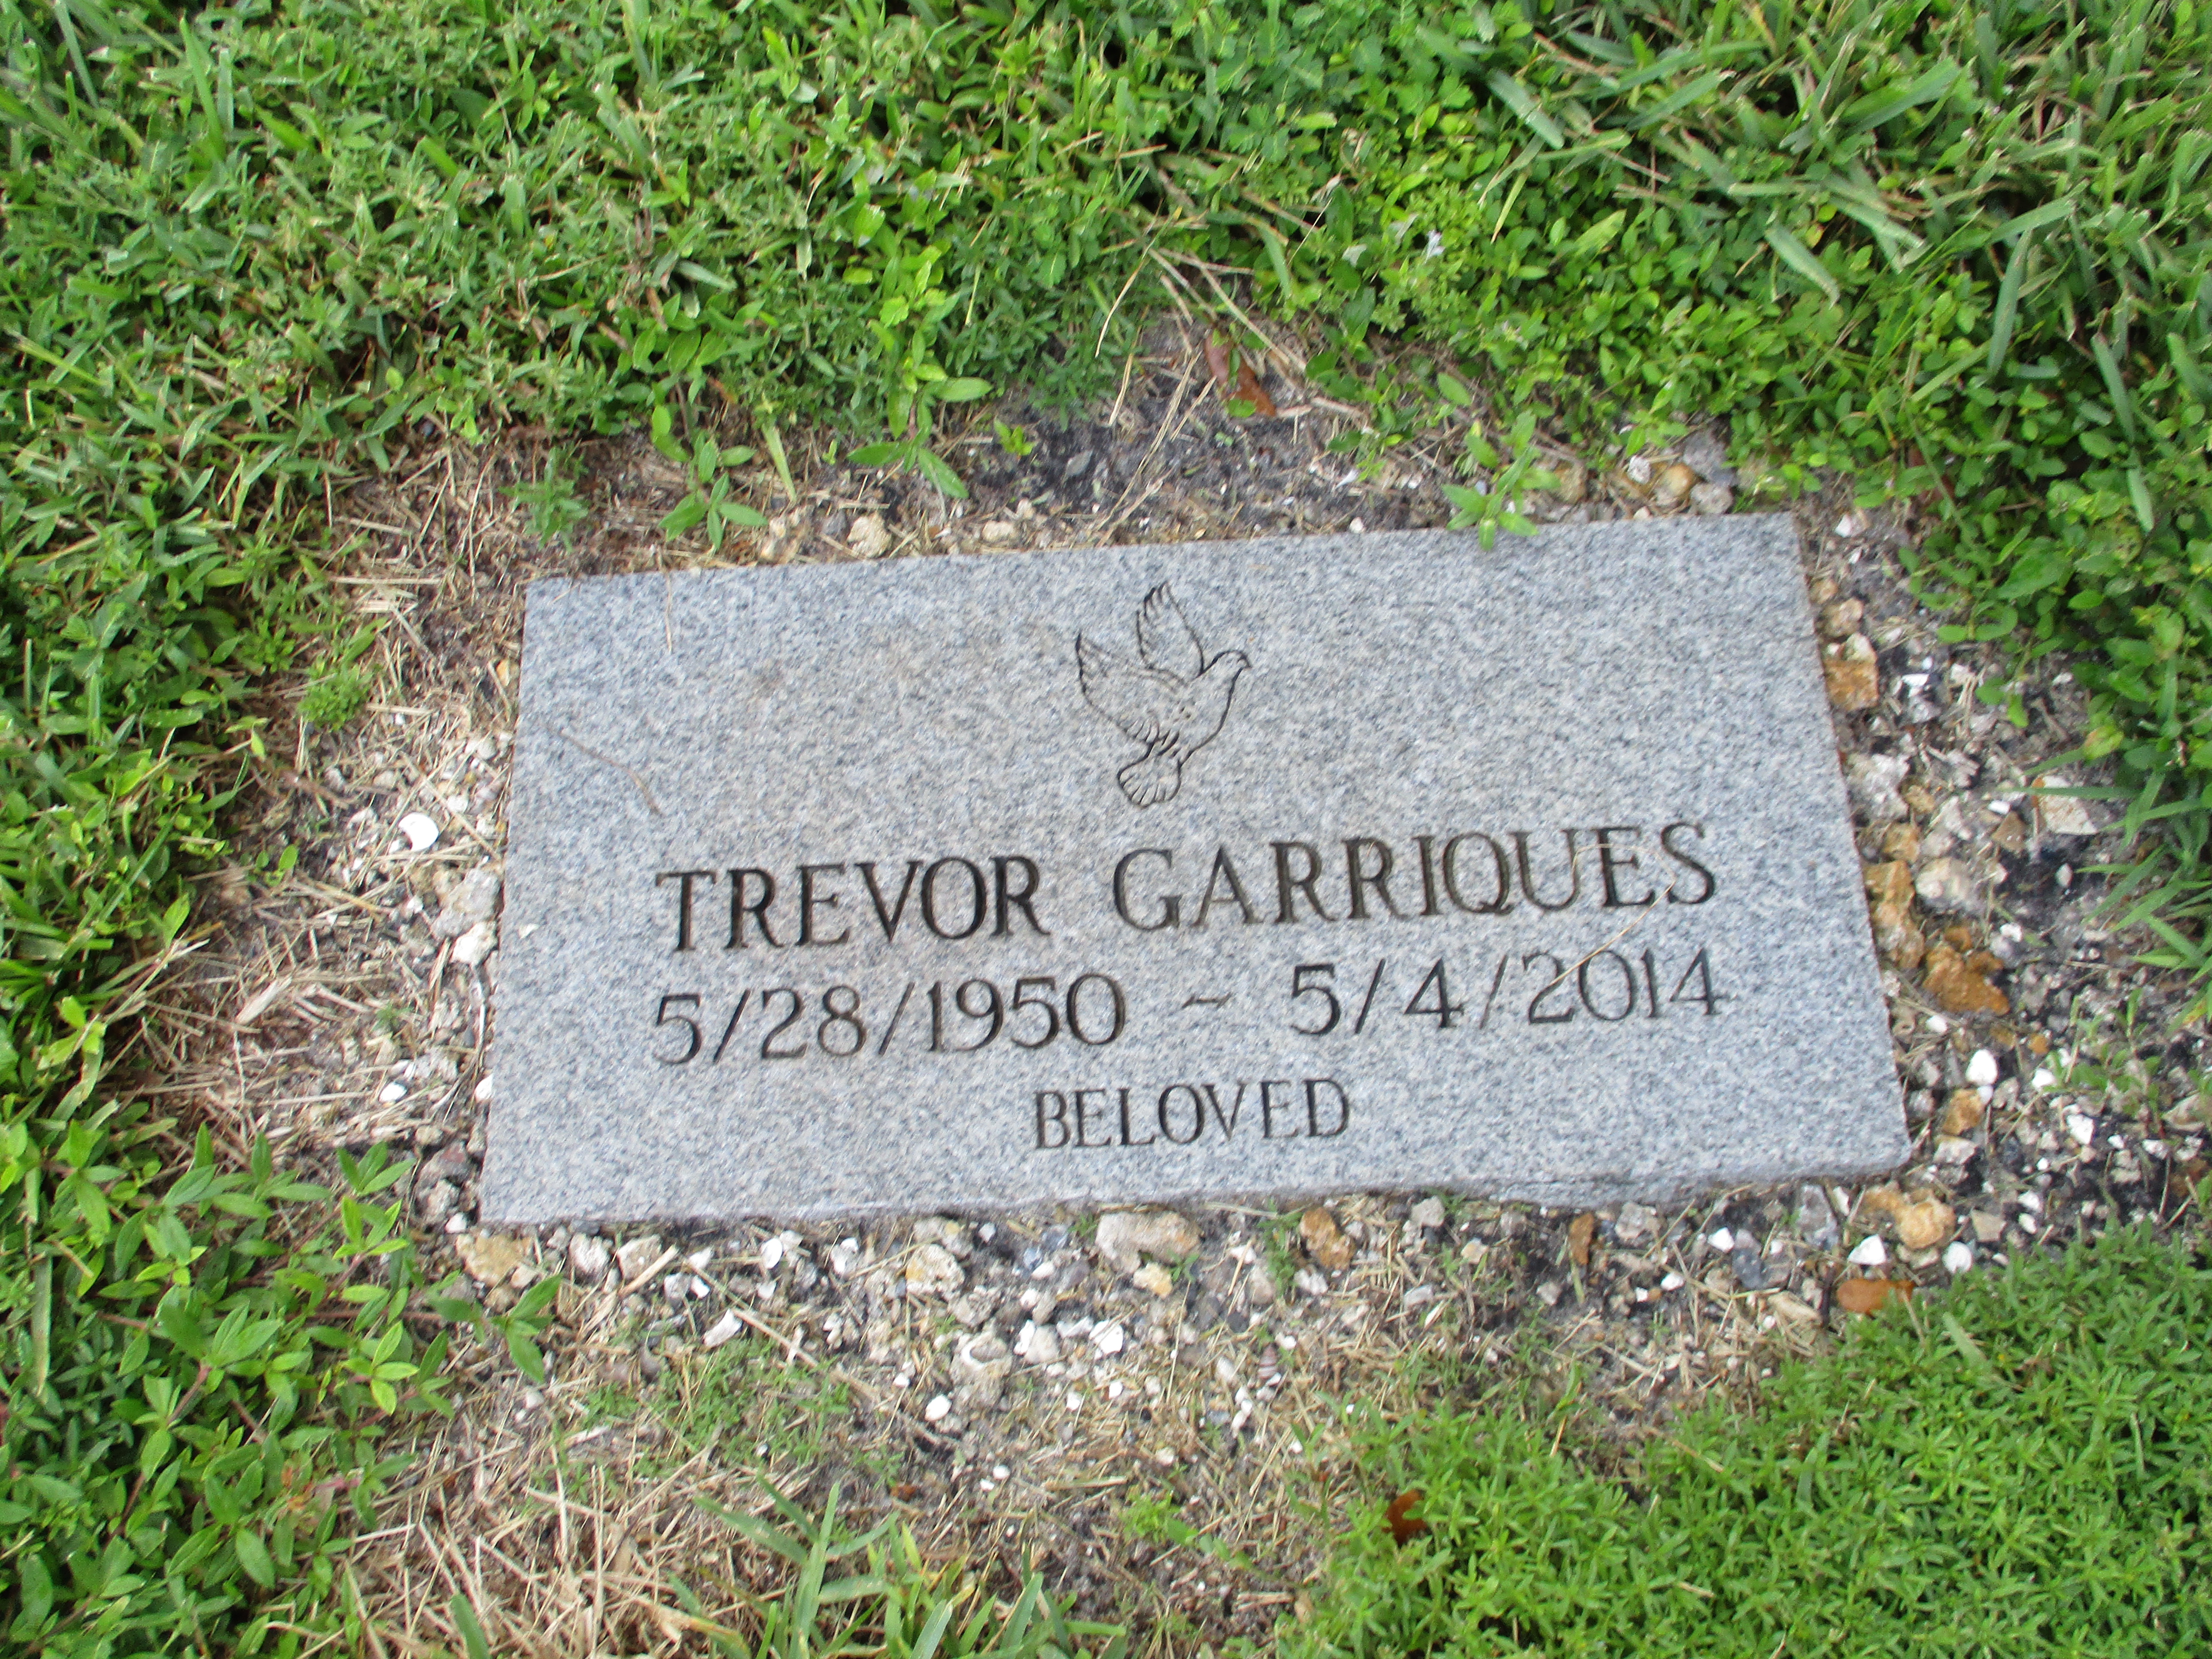 Trevor Garriques